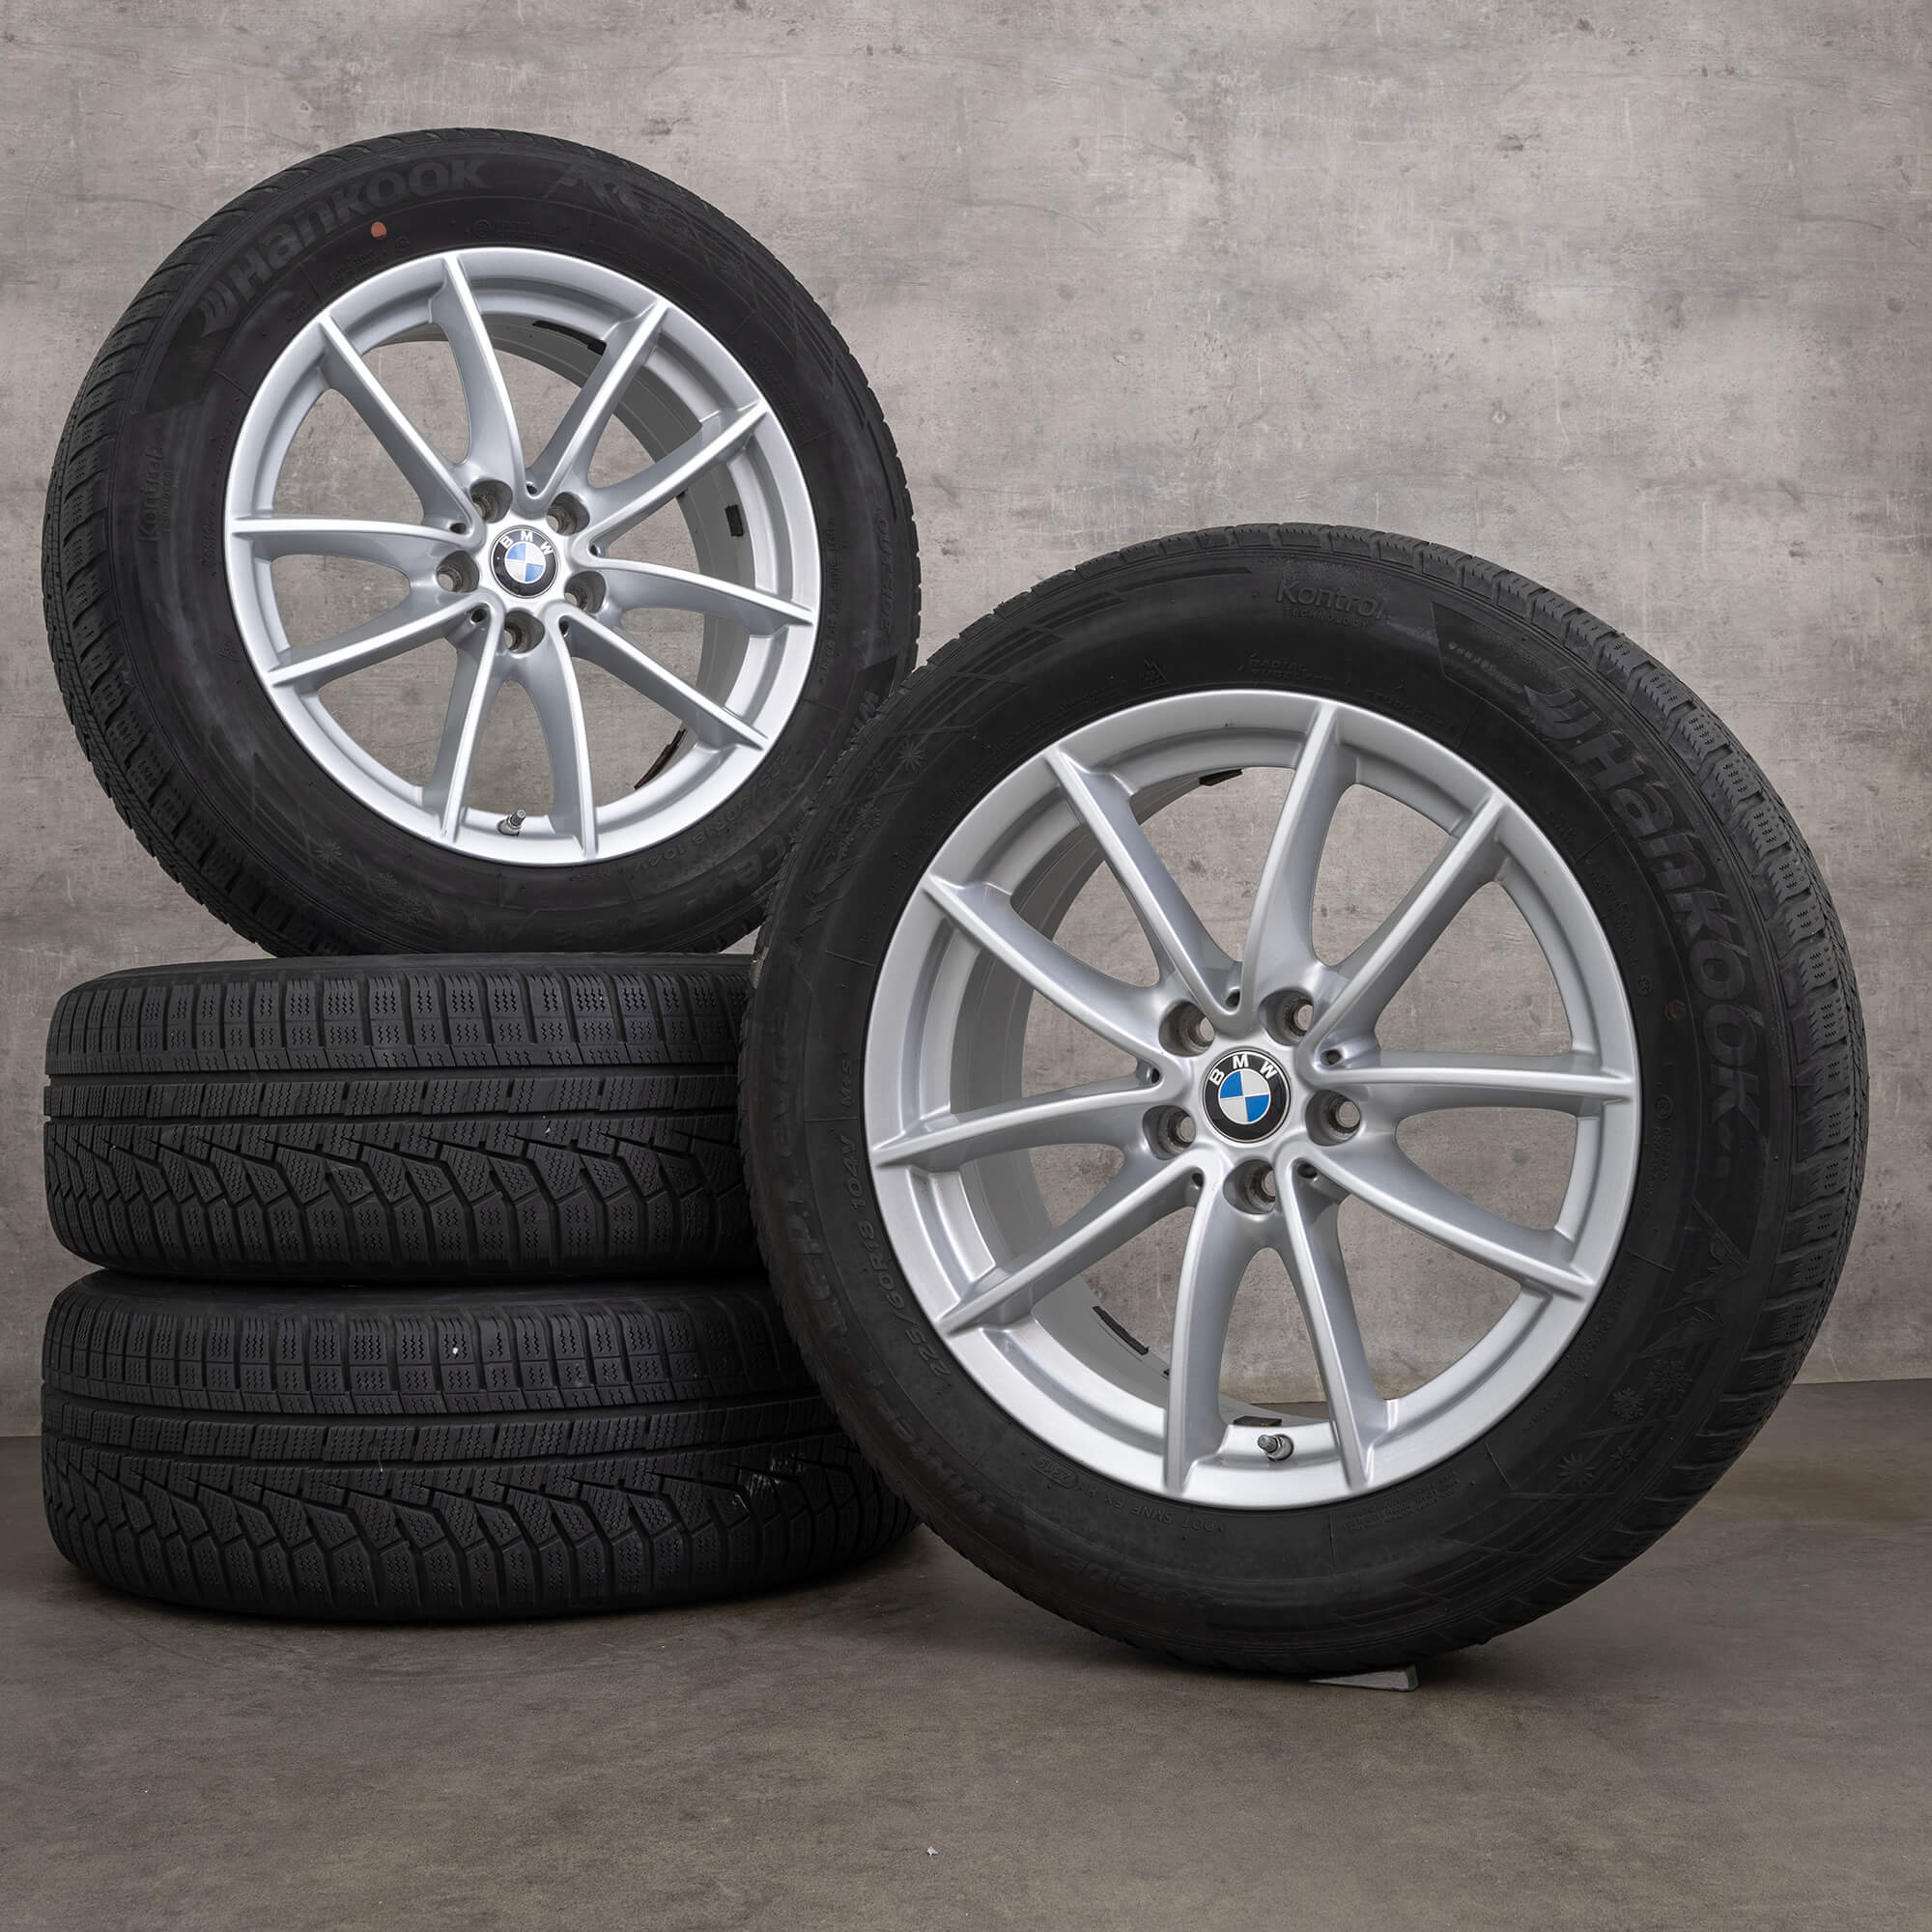 BMW X3 G01 X4 G02 winter wheels 18 inch rims 618 tires 6880047 silver